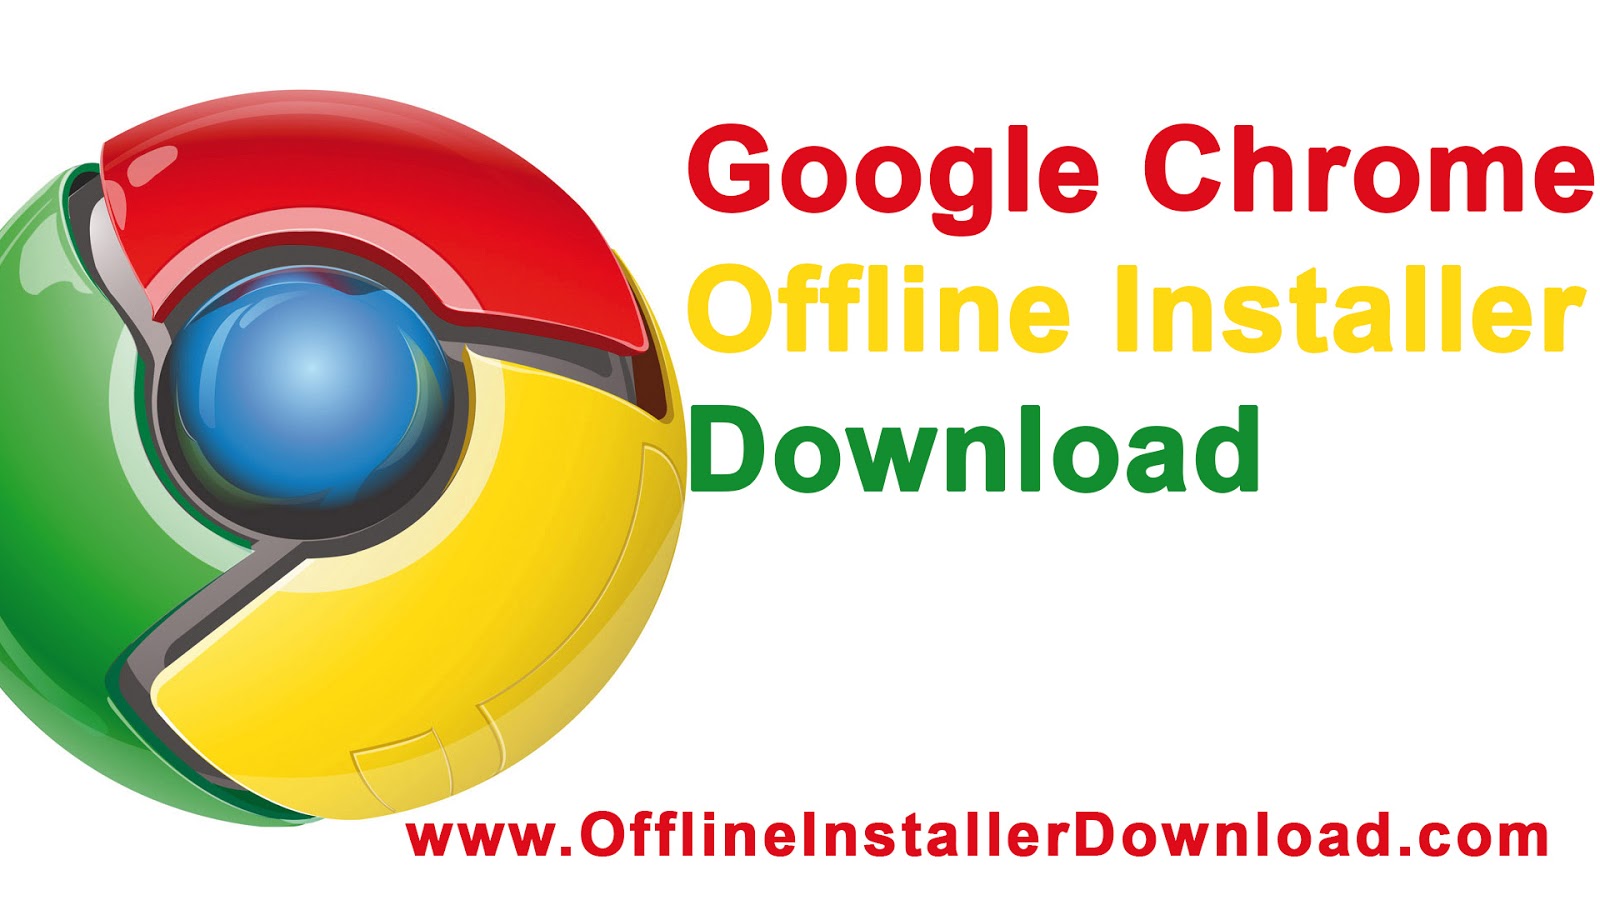 Google chrome offline installer download full version free 